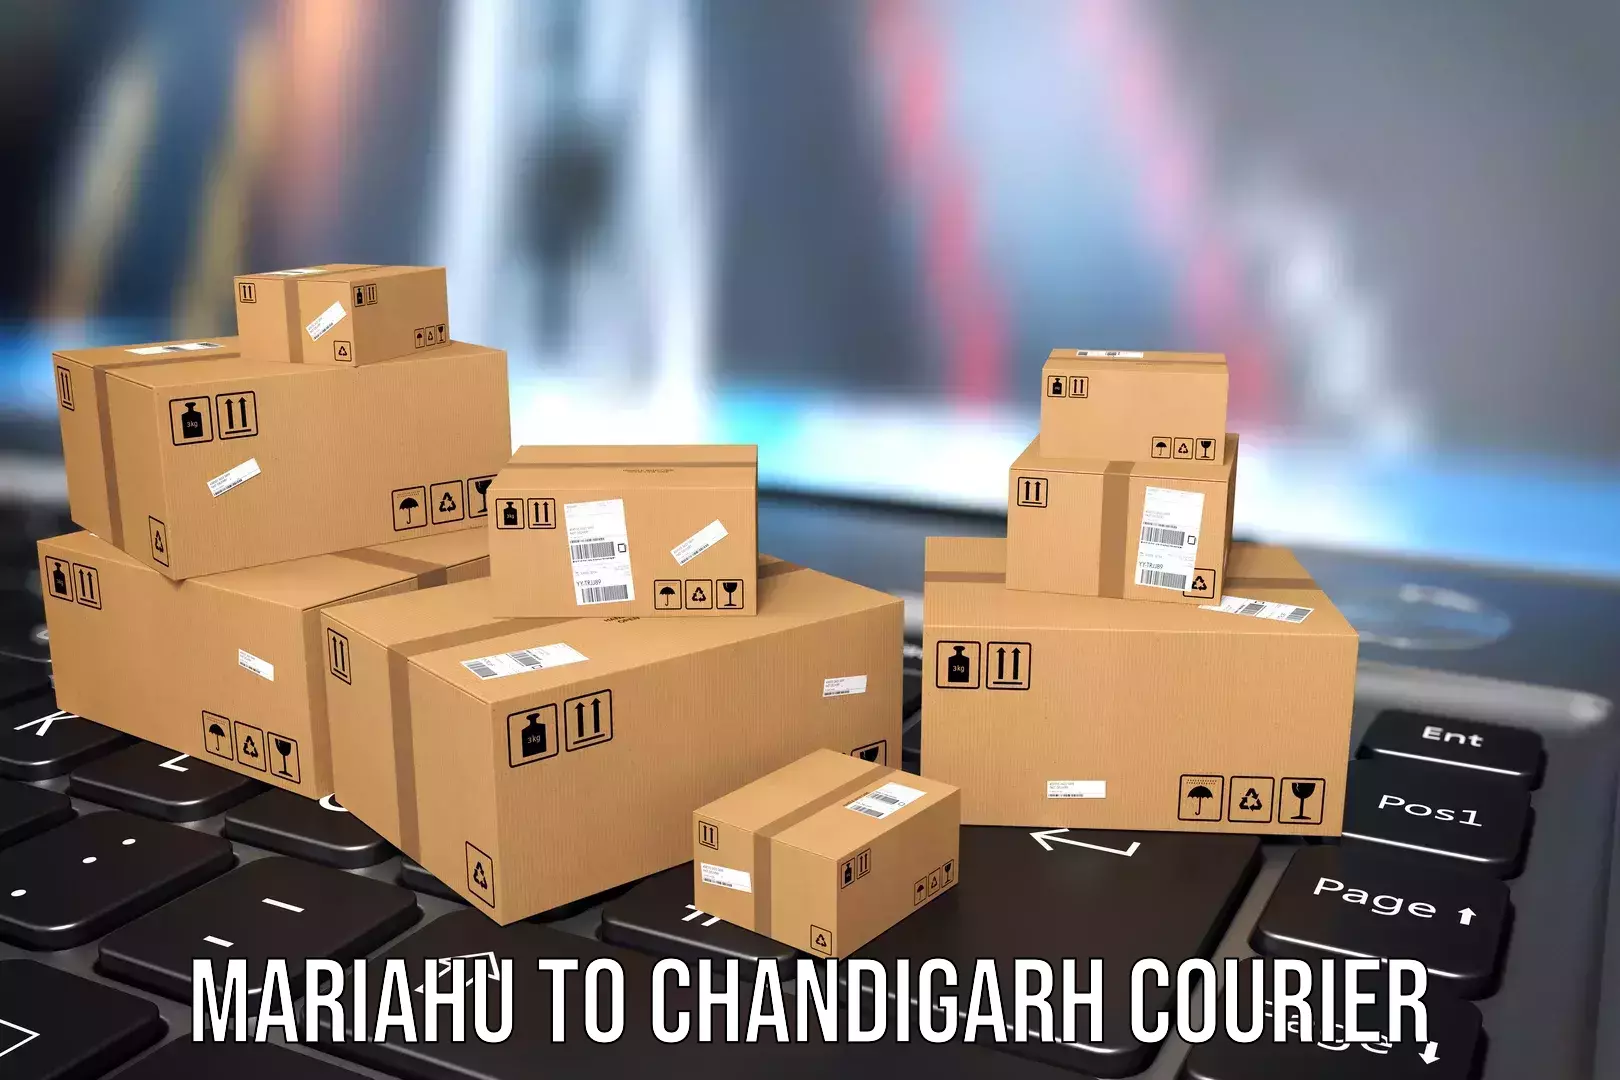 Same day luggage service Mariahu to Chandigarh